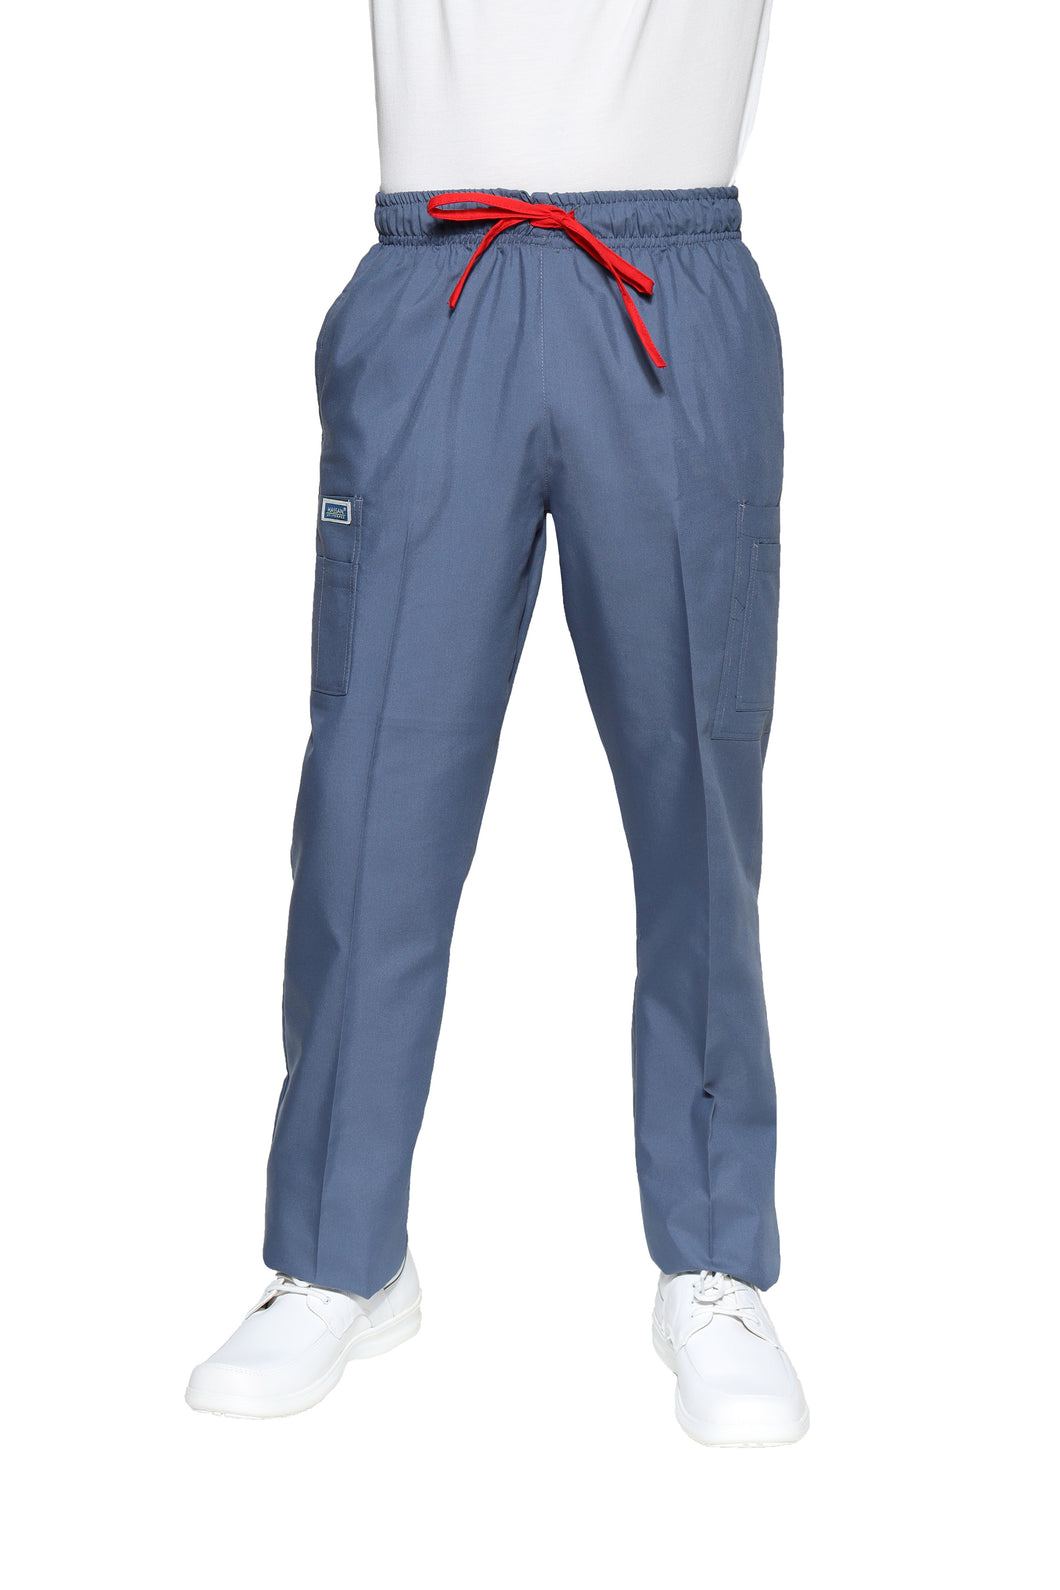 Pantalón Pant HA-25P-TELA SPORT-Color ACERO/ROJO-HOMBRE-HASSAN Uniformes